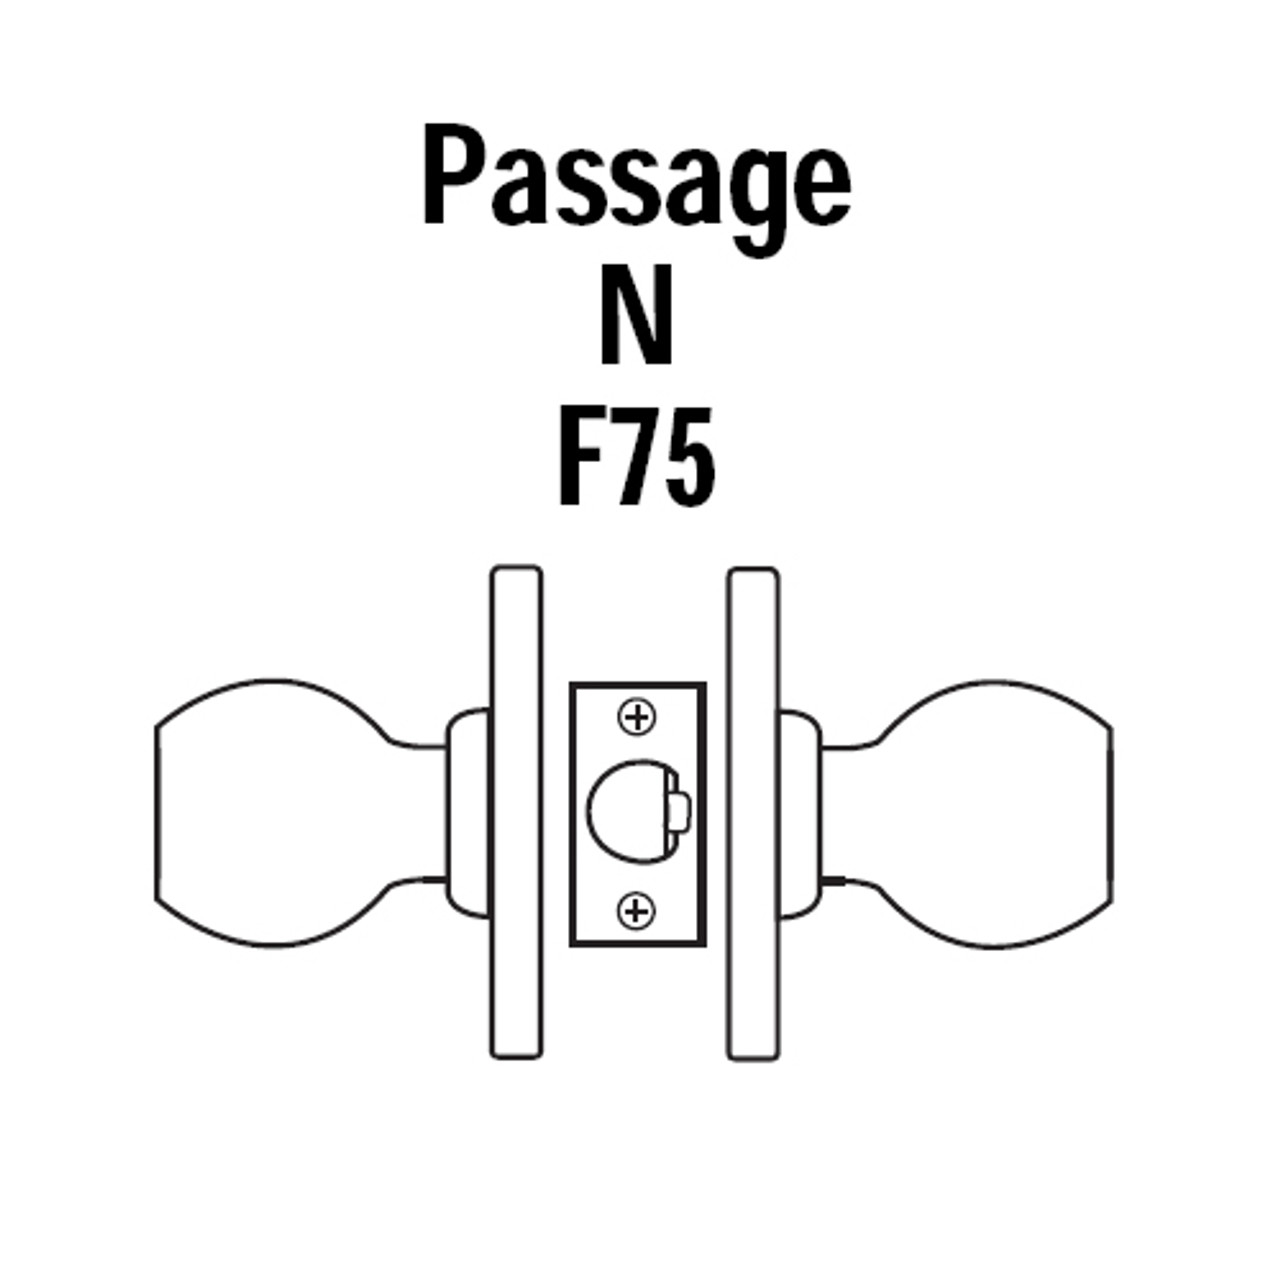 8K30N4DSTK612 Best 8K Series Passage Heavy Duty Cylindrical Knob Locks with Round Style in Satin Bronze